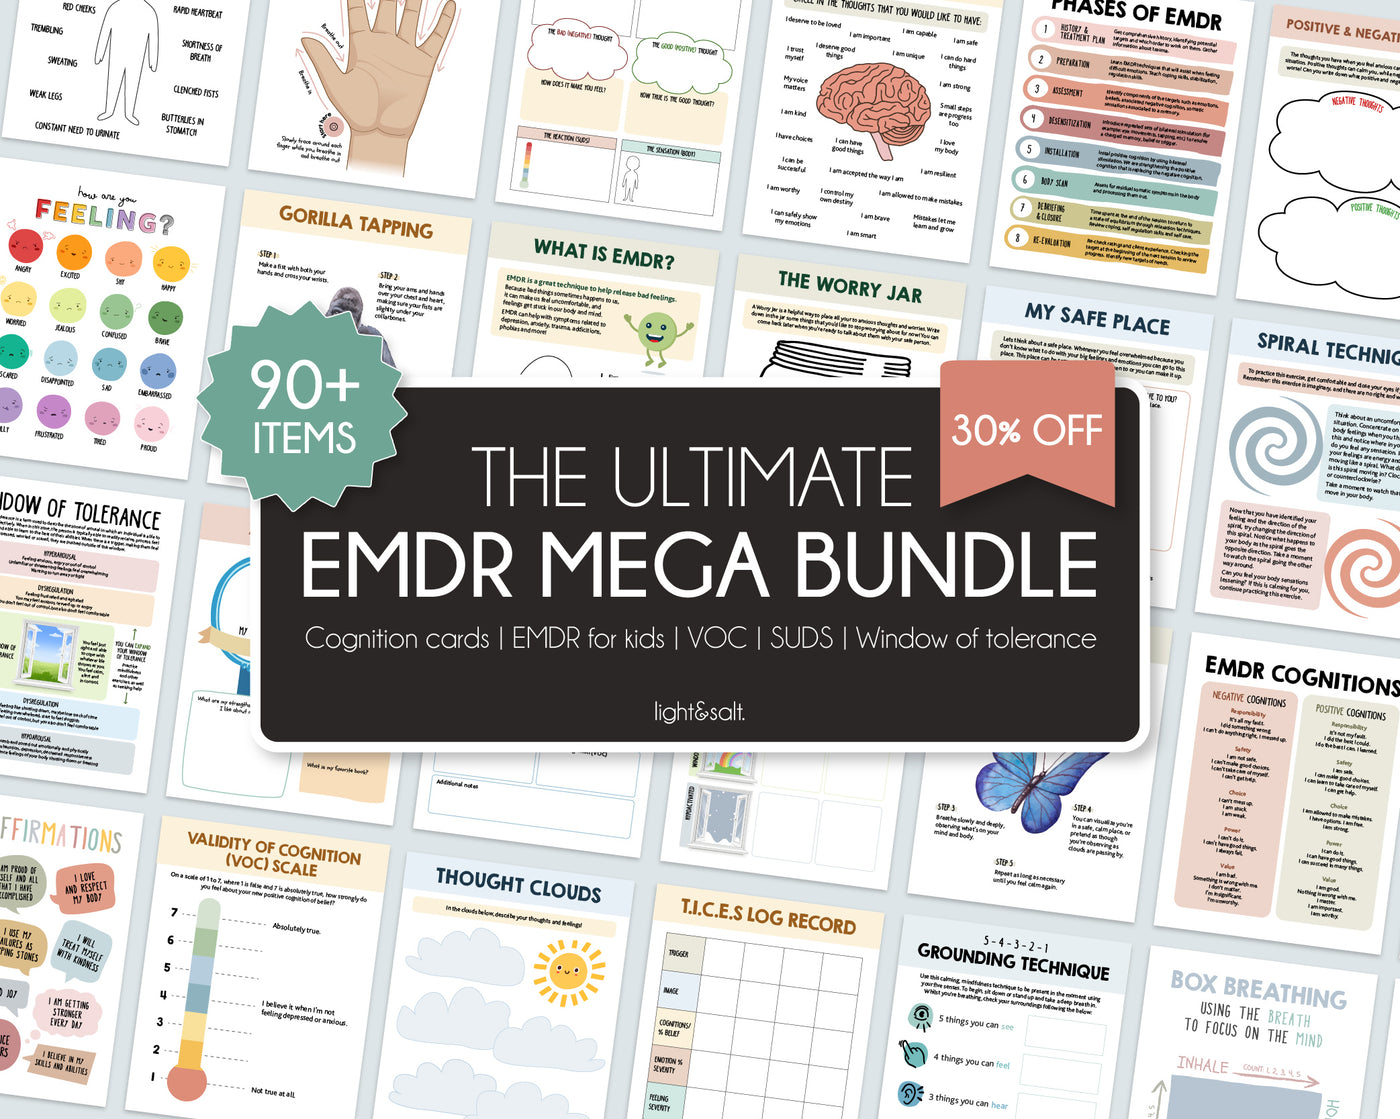 EMDR Bundle resources, 30% OFF